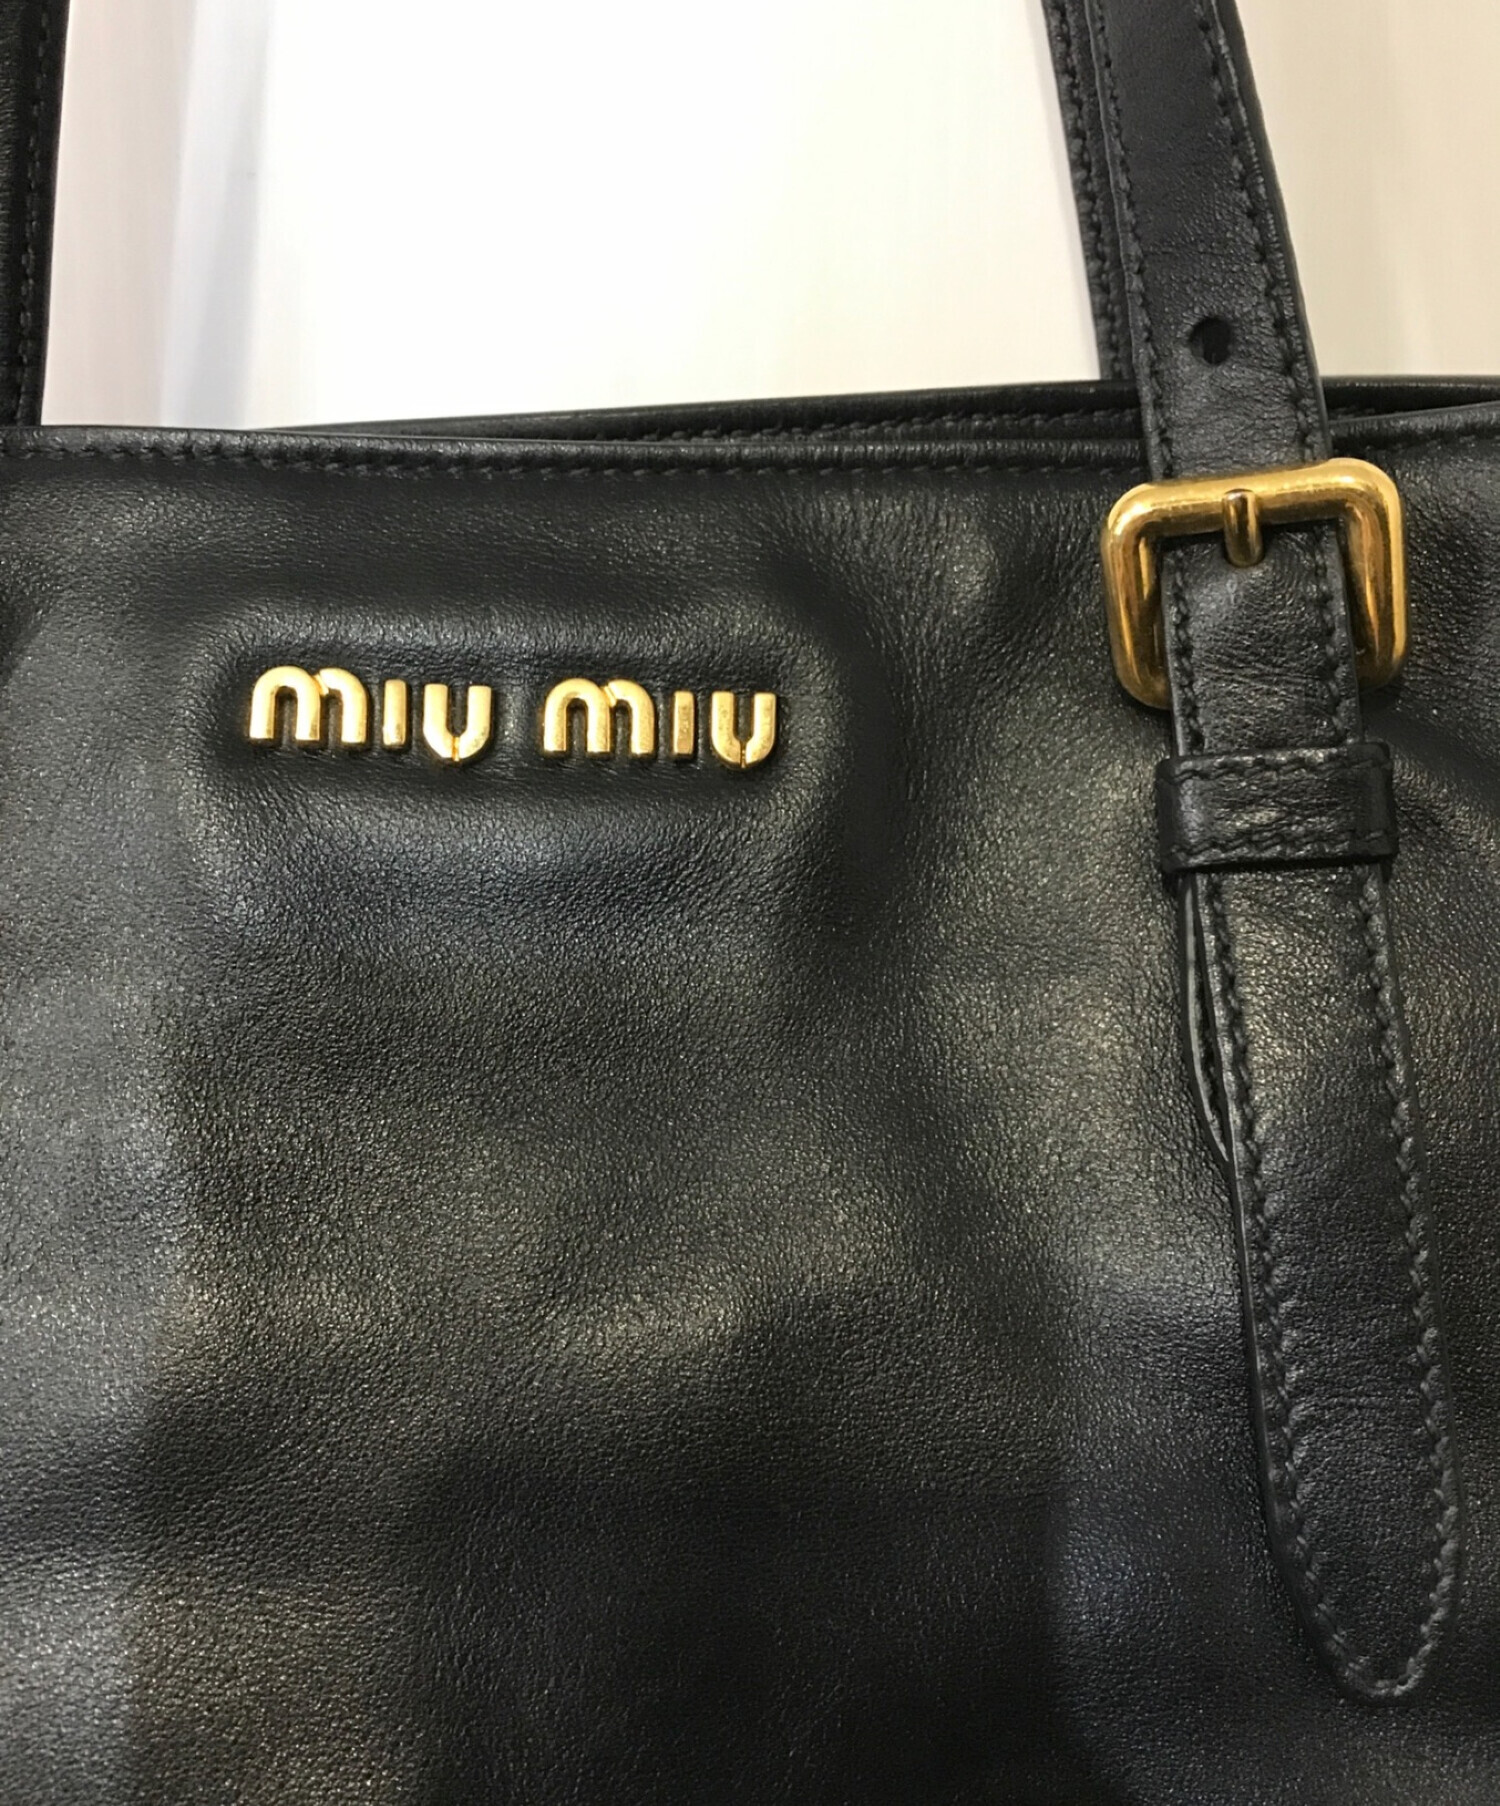 MIU MIU (ミュウミュウ) スタッズレザートートバッグ